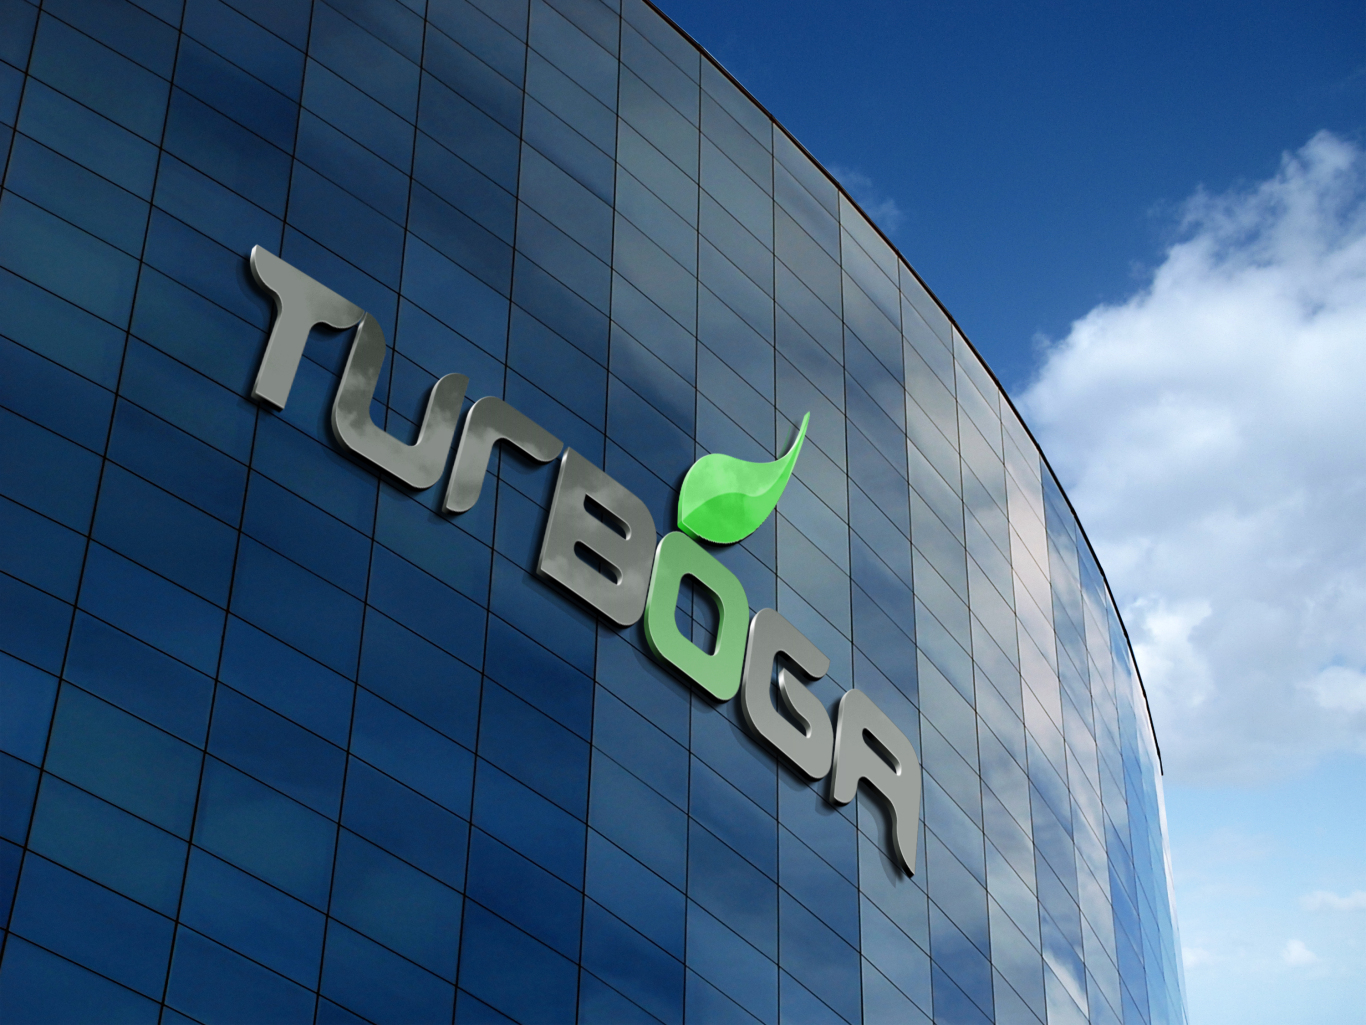 TURBOGA商标设计LOGO设计应用图1